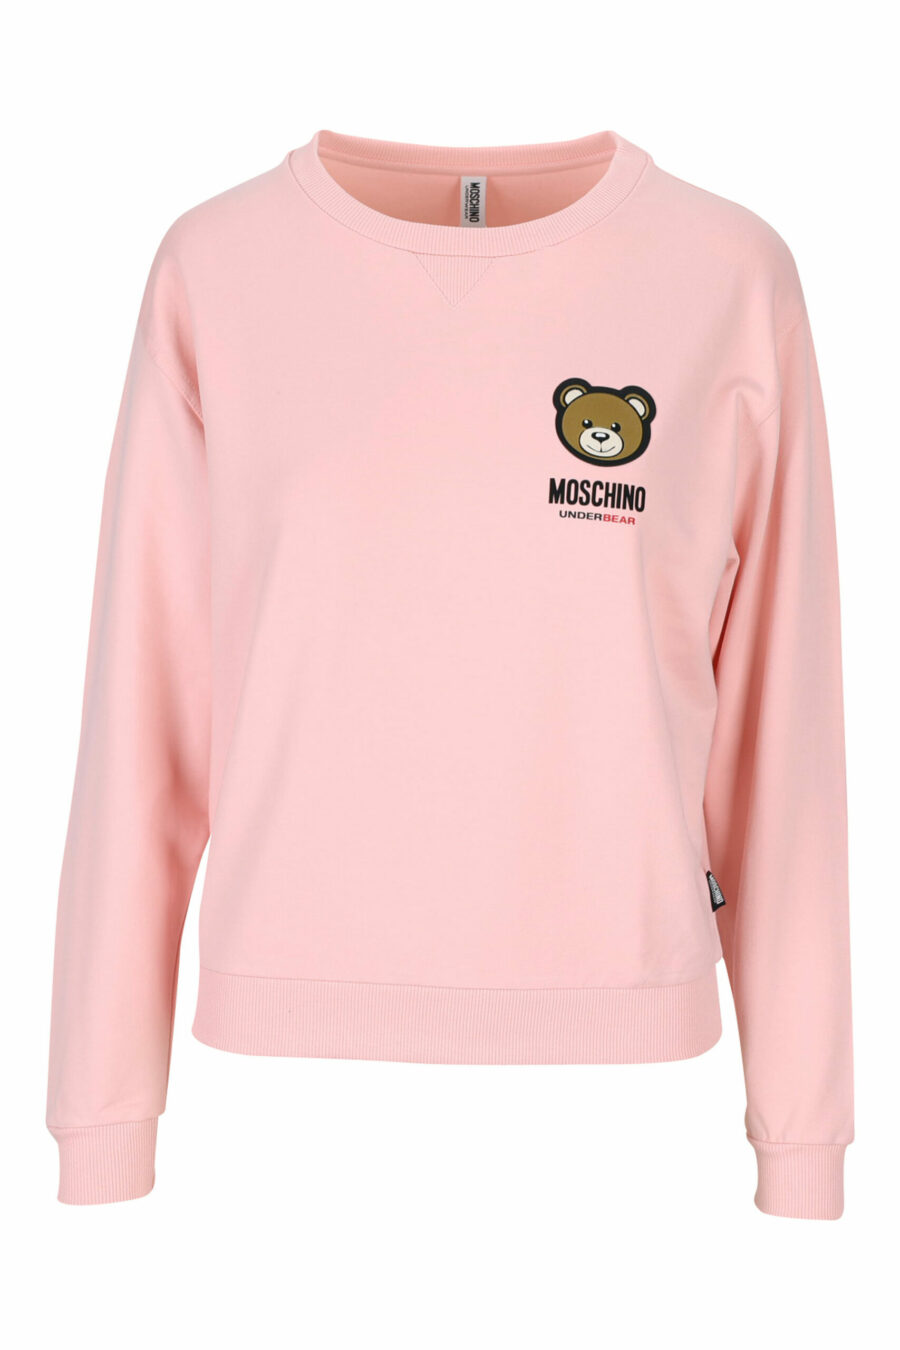 Rosa Sweatshirt mit Bärenlogoaufnäher "underbear" - 889316618365 skaliert